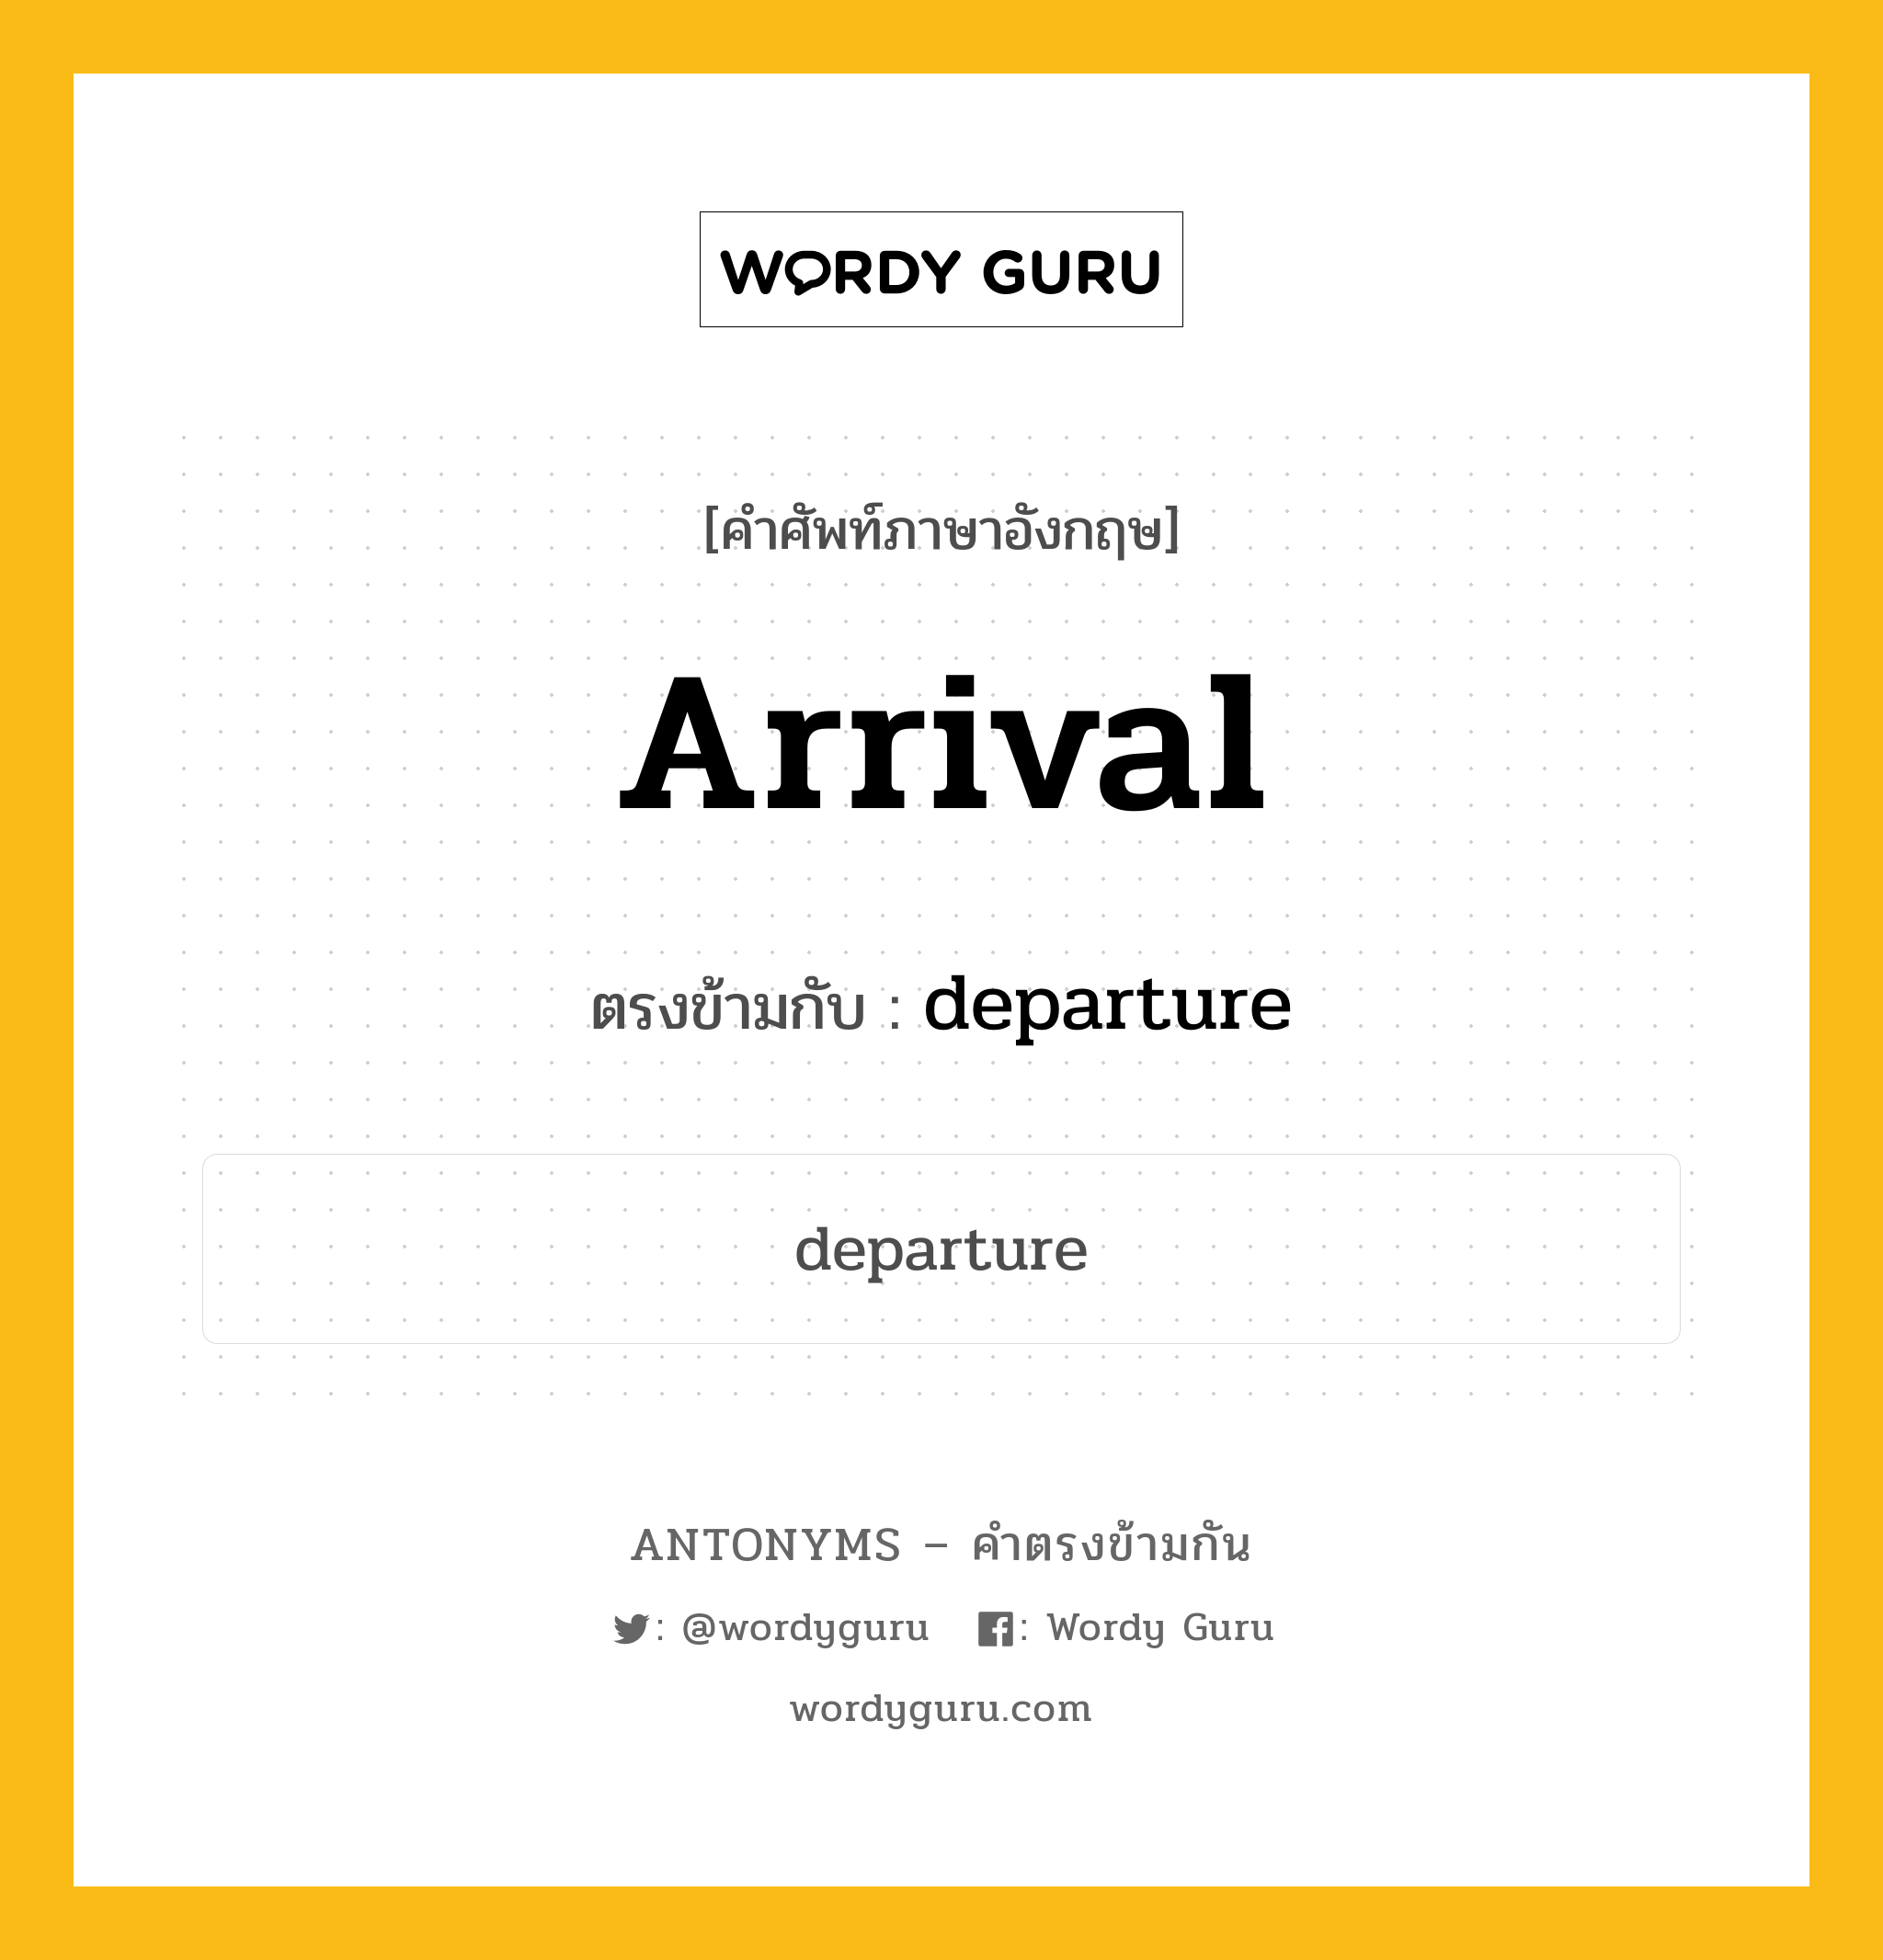 arrival เป็นคำตรงข้ามกับคำไหนบ้าง?, คำศัพท์ภาษาอังกฤษ arrival ตรงข้ามกับ departure หมวด departure